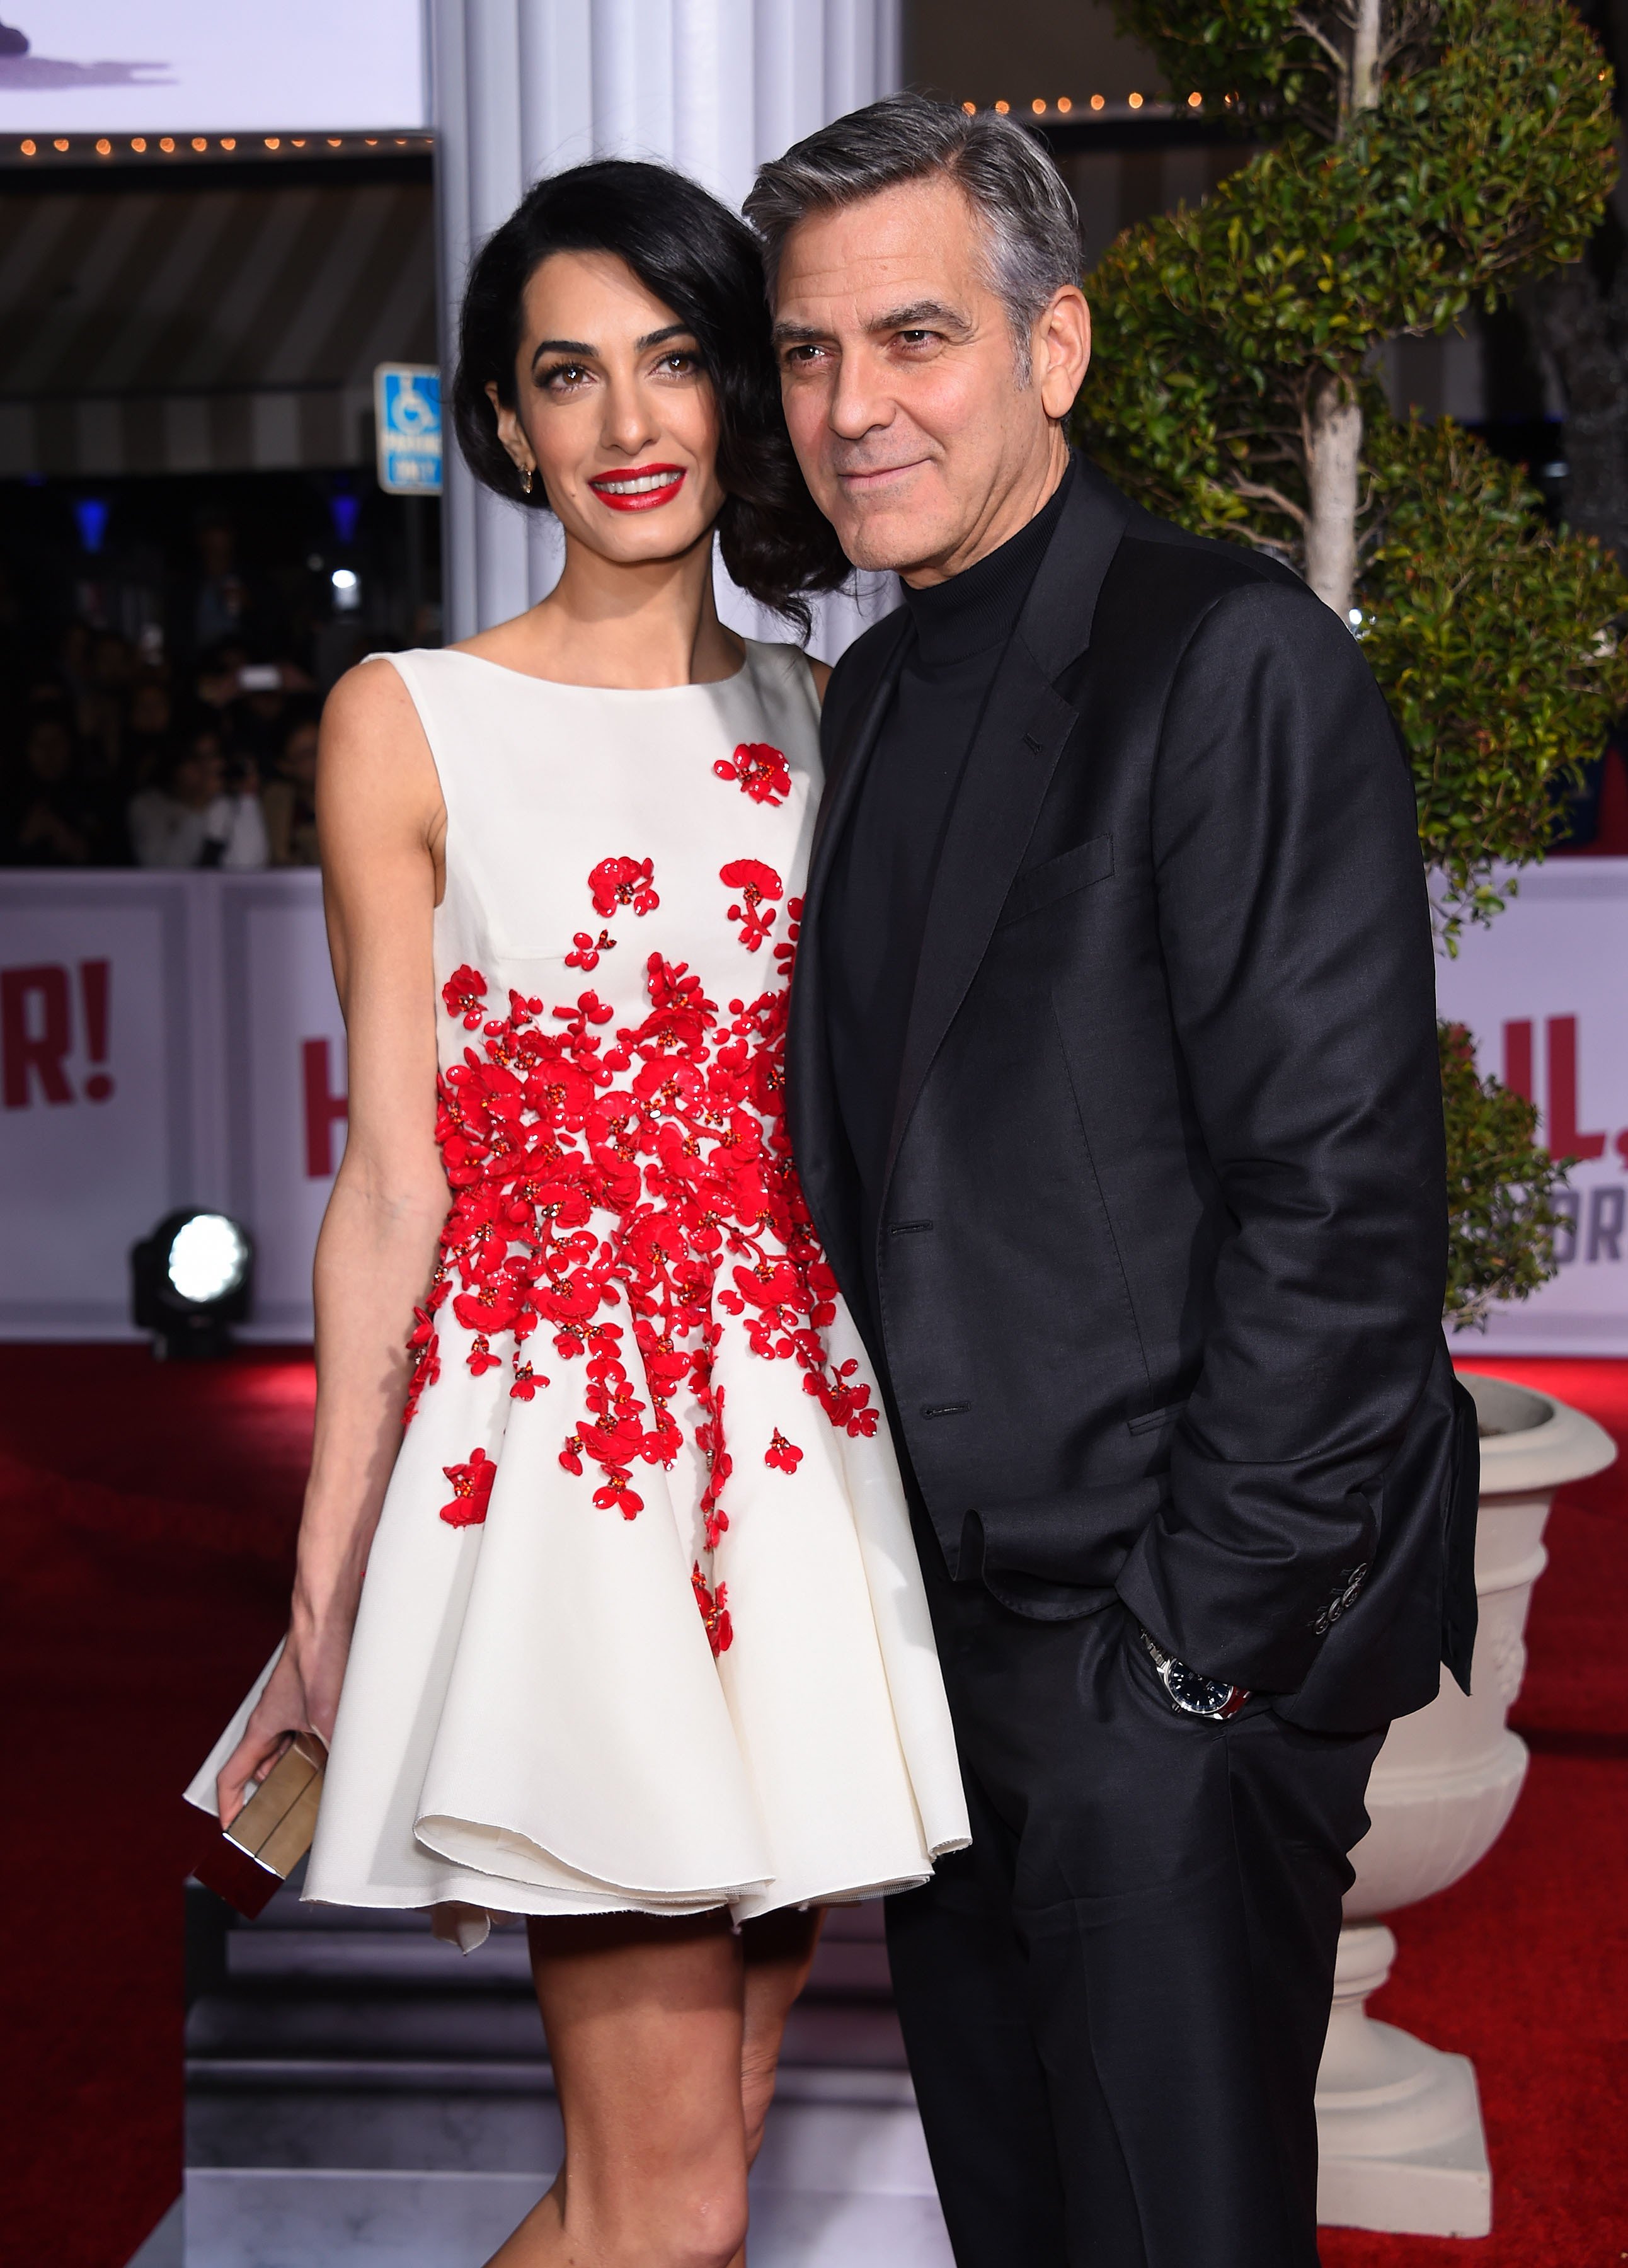 George Clooney et Amal Alamuddin arrivent à la première mondiale de "Hail, Caesar" le 01 février 2016. | Photo : Shutterstock